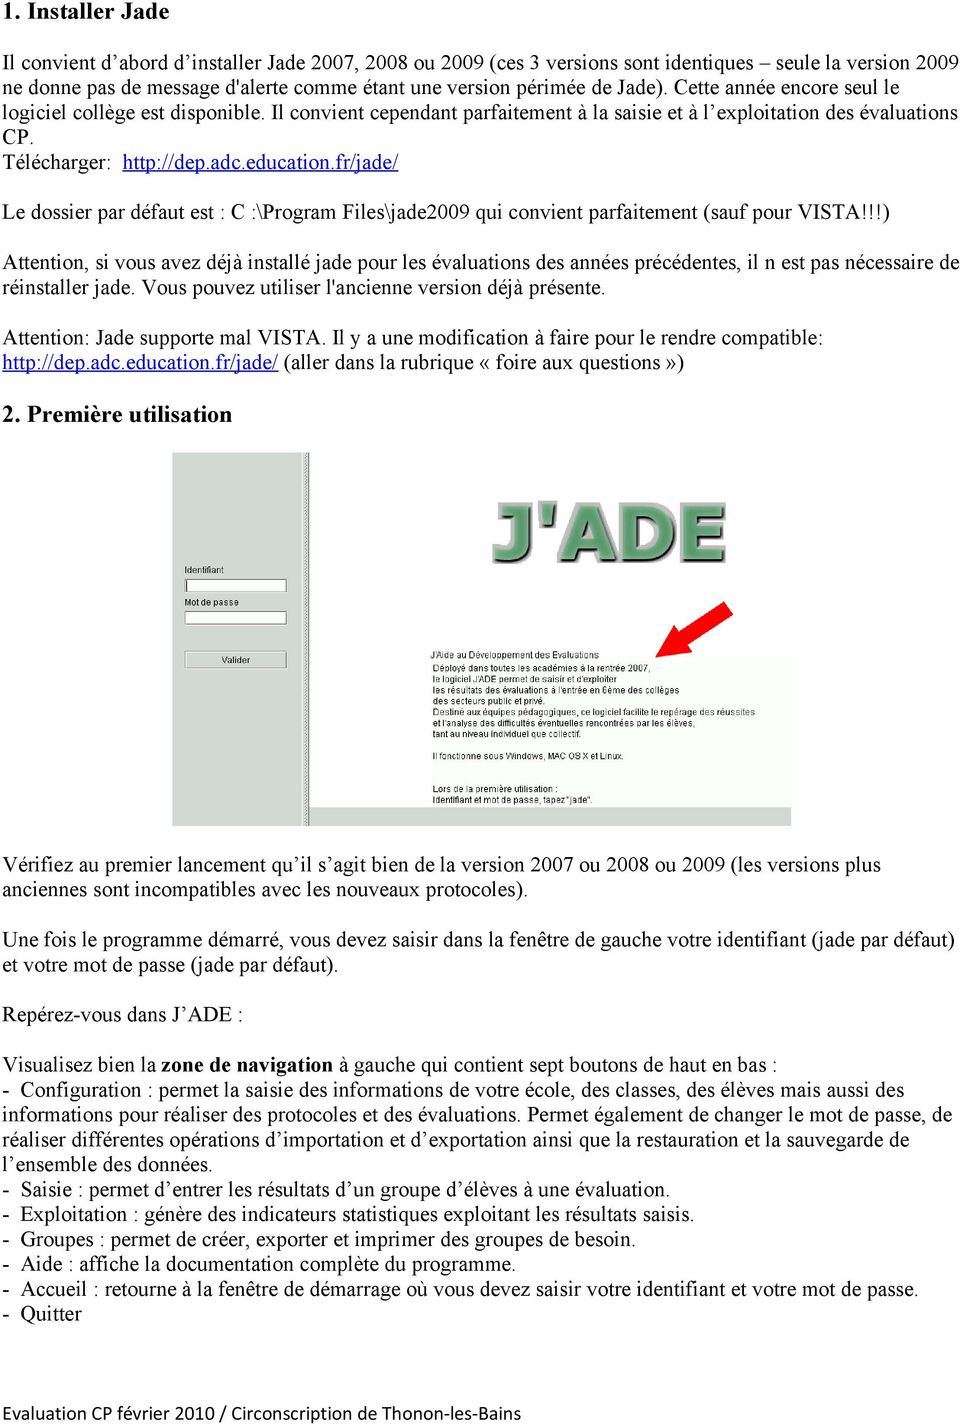 fr/jade/ Le dossier par défaut est : C :\Program Files\jade2009 qui convient parfaitement (sauf pour VISTA!